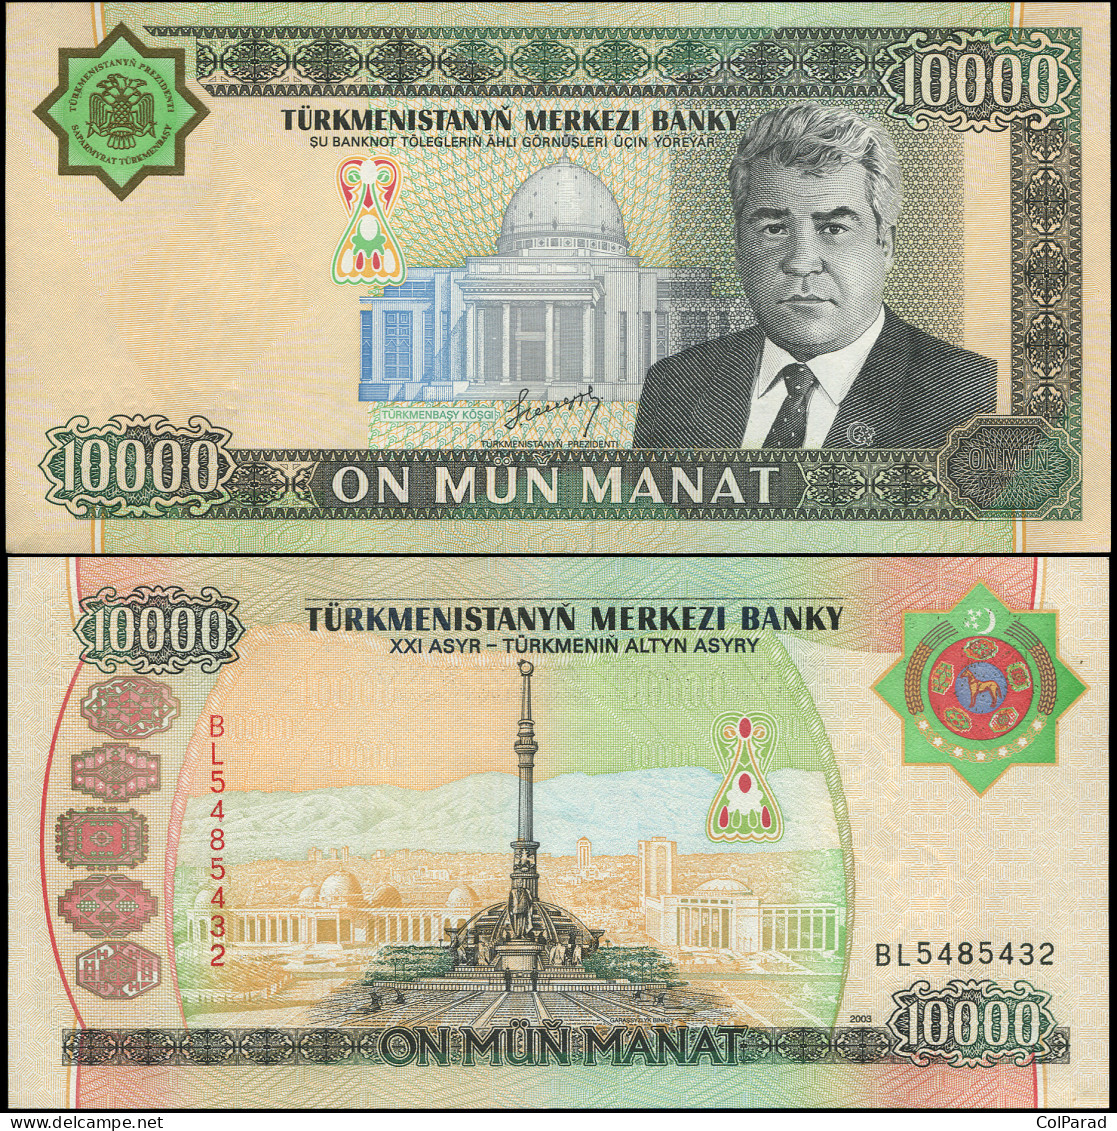 TURKMENISTAN 10000 MANAT - 2003 - Paper Unc - P.15a Banknote - Turkmenistan